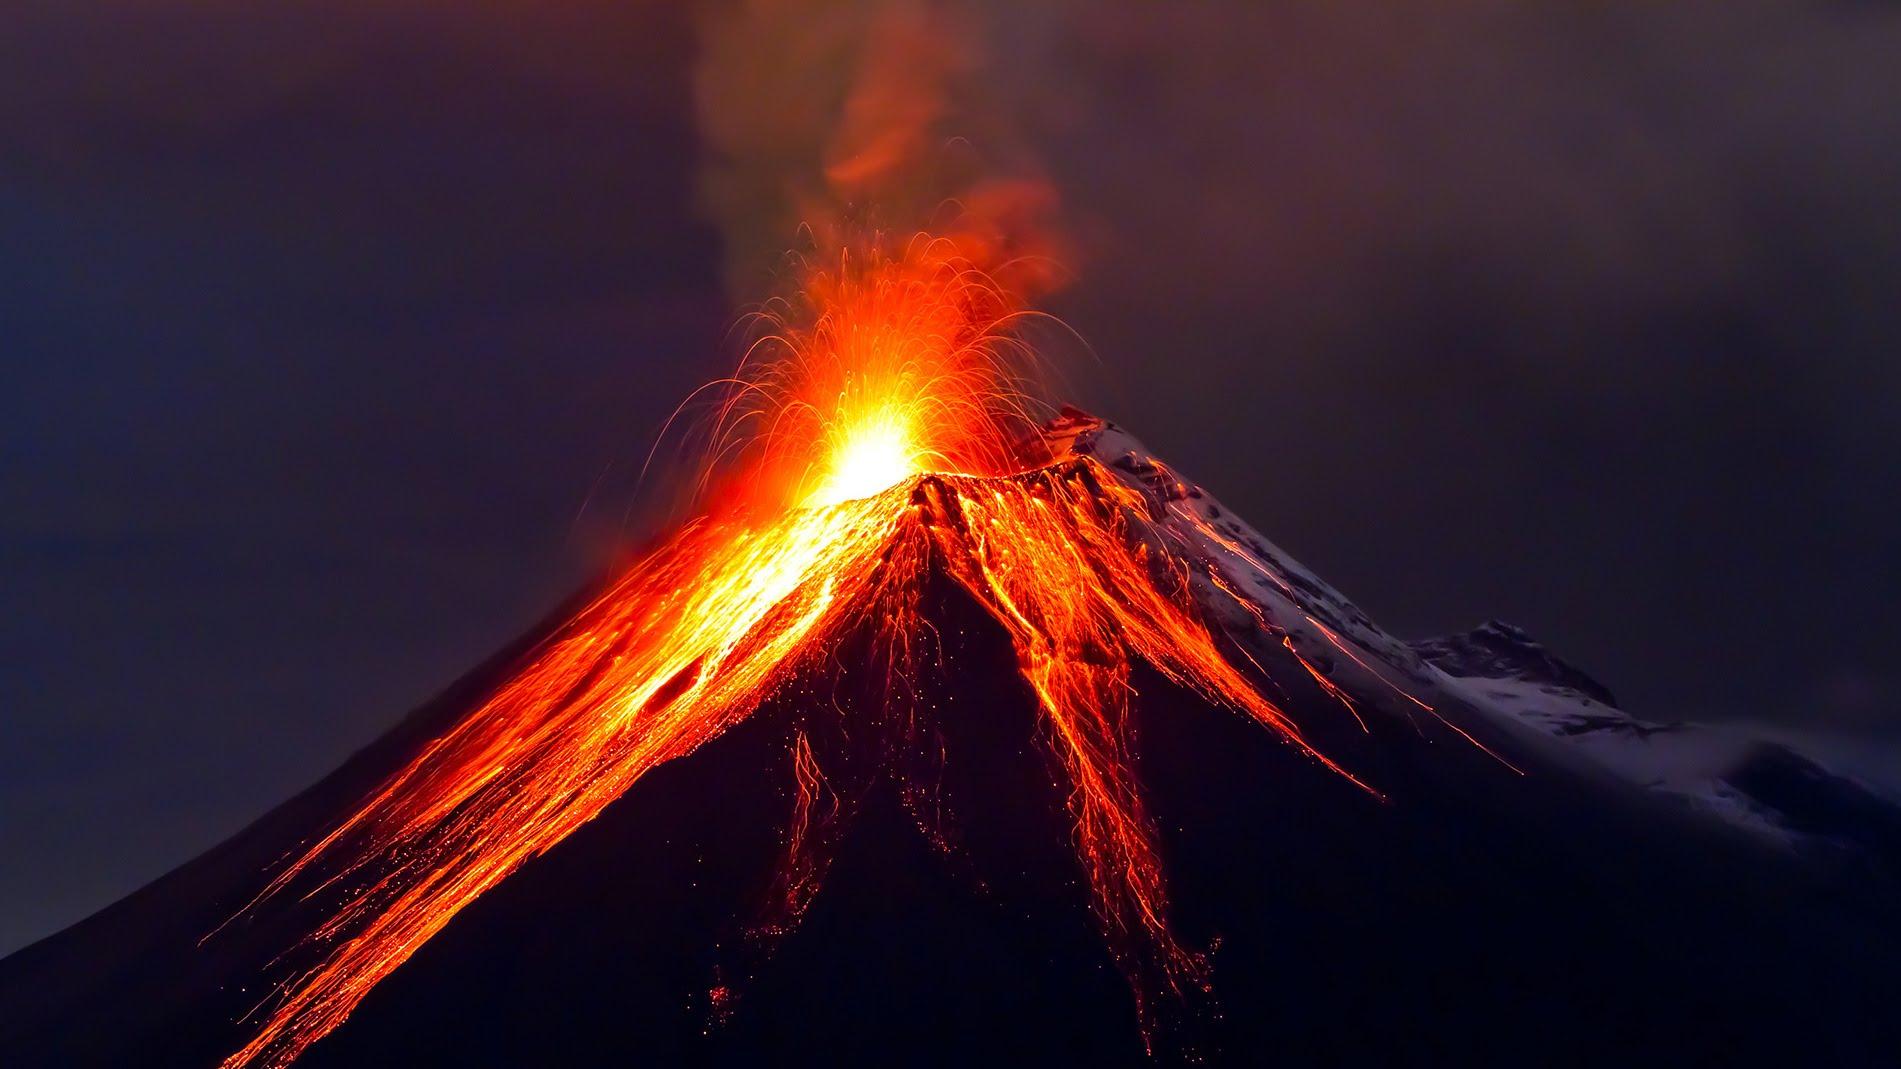 Kakva smrt: Bježao od erupcije Vezuva, a ubio ga kameni blok